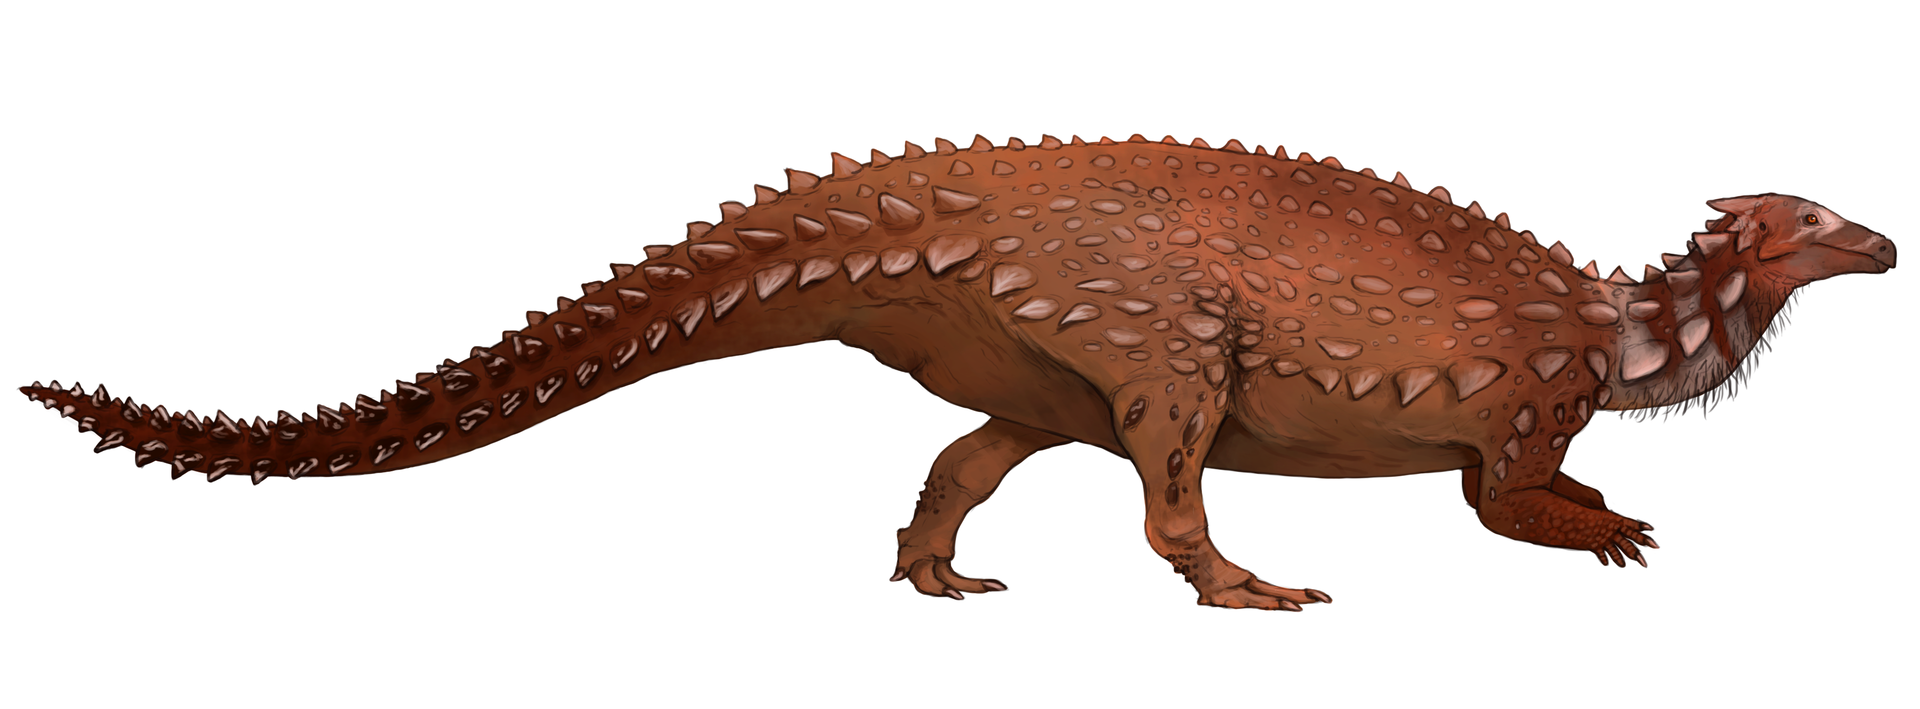 Moderní rekonstrukce vzezření vývojově primitivního ptakopánvého dinosaura druhu Scelidosaurus harrisonni. Tento menší příbuzný pozdějších ankylosauridů byl objeven již v polovině předminulého století, teprve v posledních několika letech však byl dos